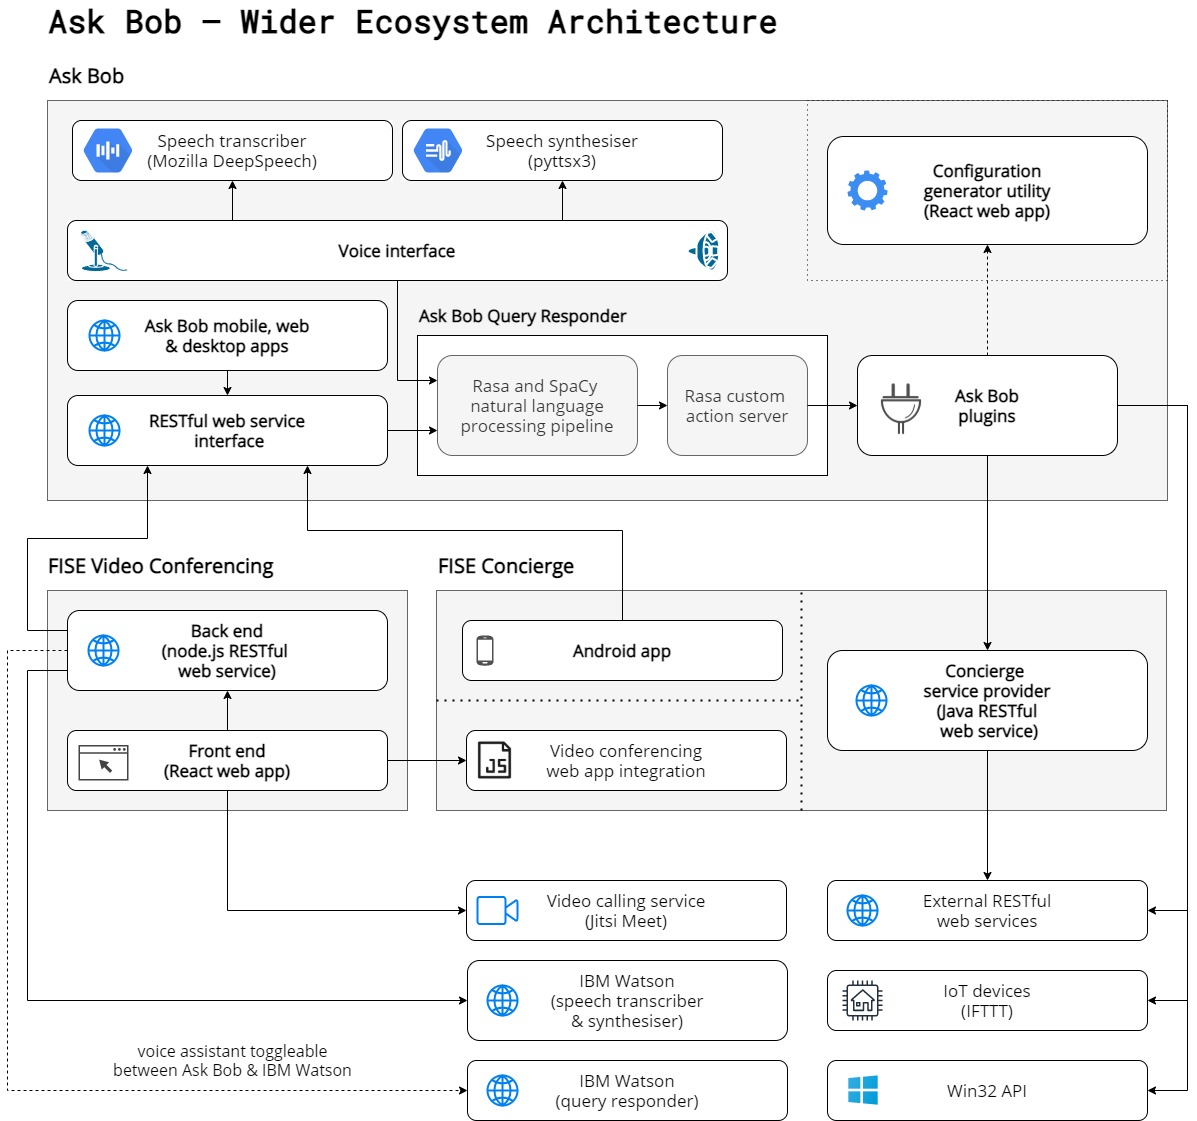 AskBob - Wider Ecosystem Architecture